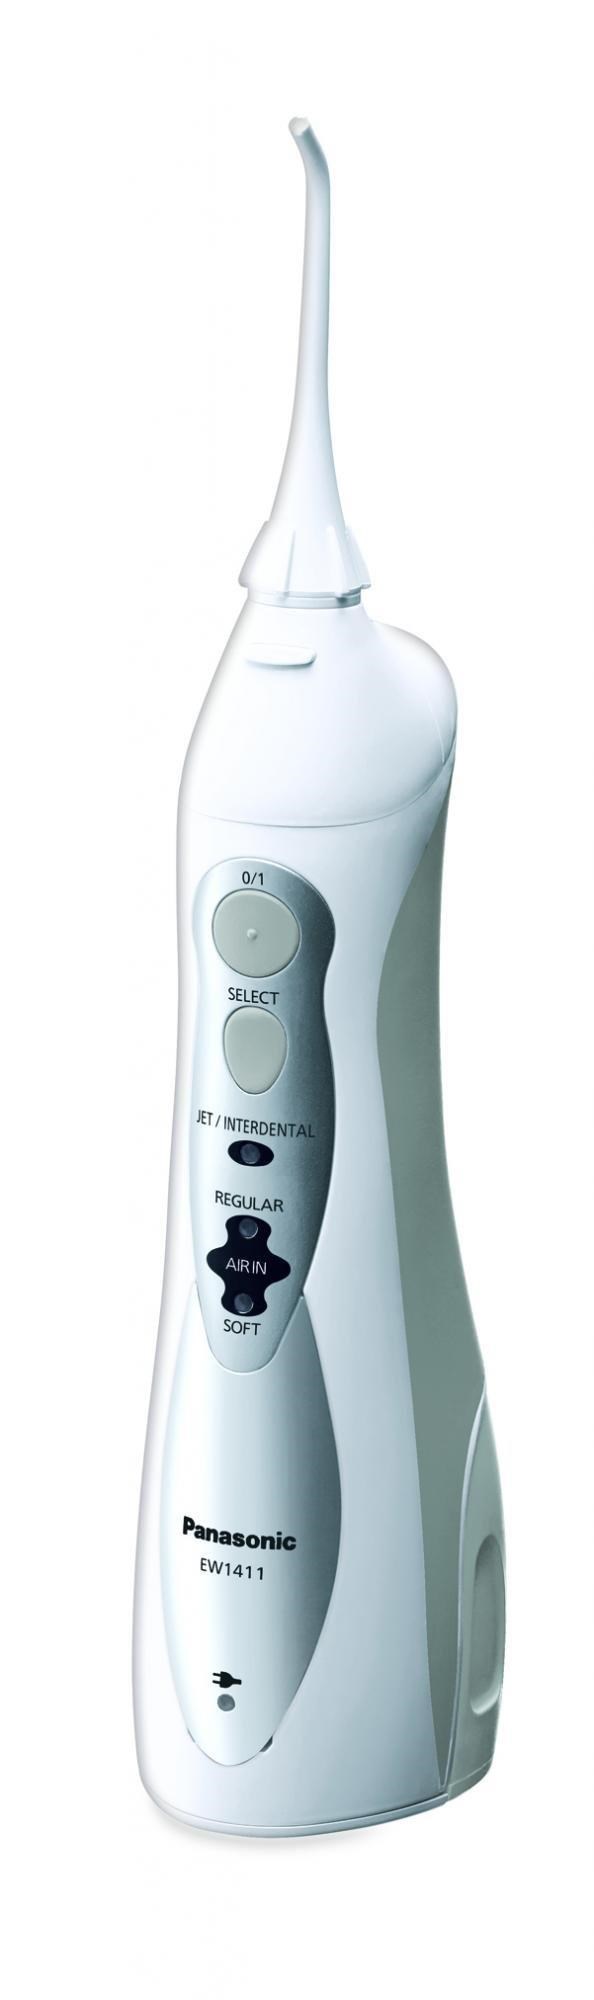 Panasonic EW1411H845 ústní sprcha, 1400 pulzů, 130 ml, 3 stupně nastavení, nabíjecí akumulátor, bílá3 